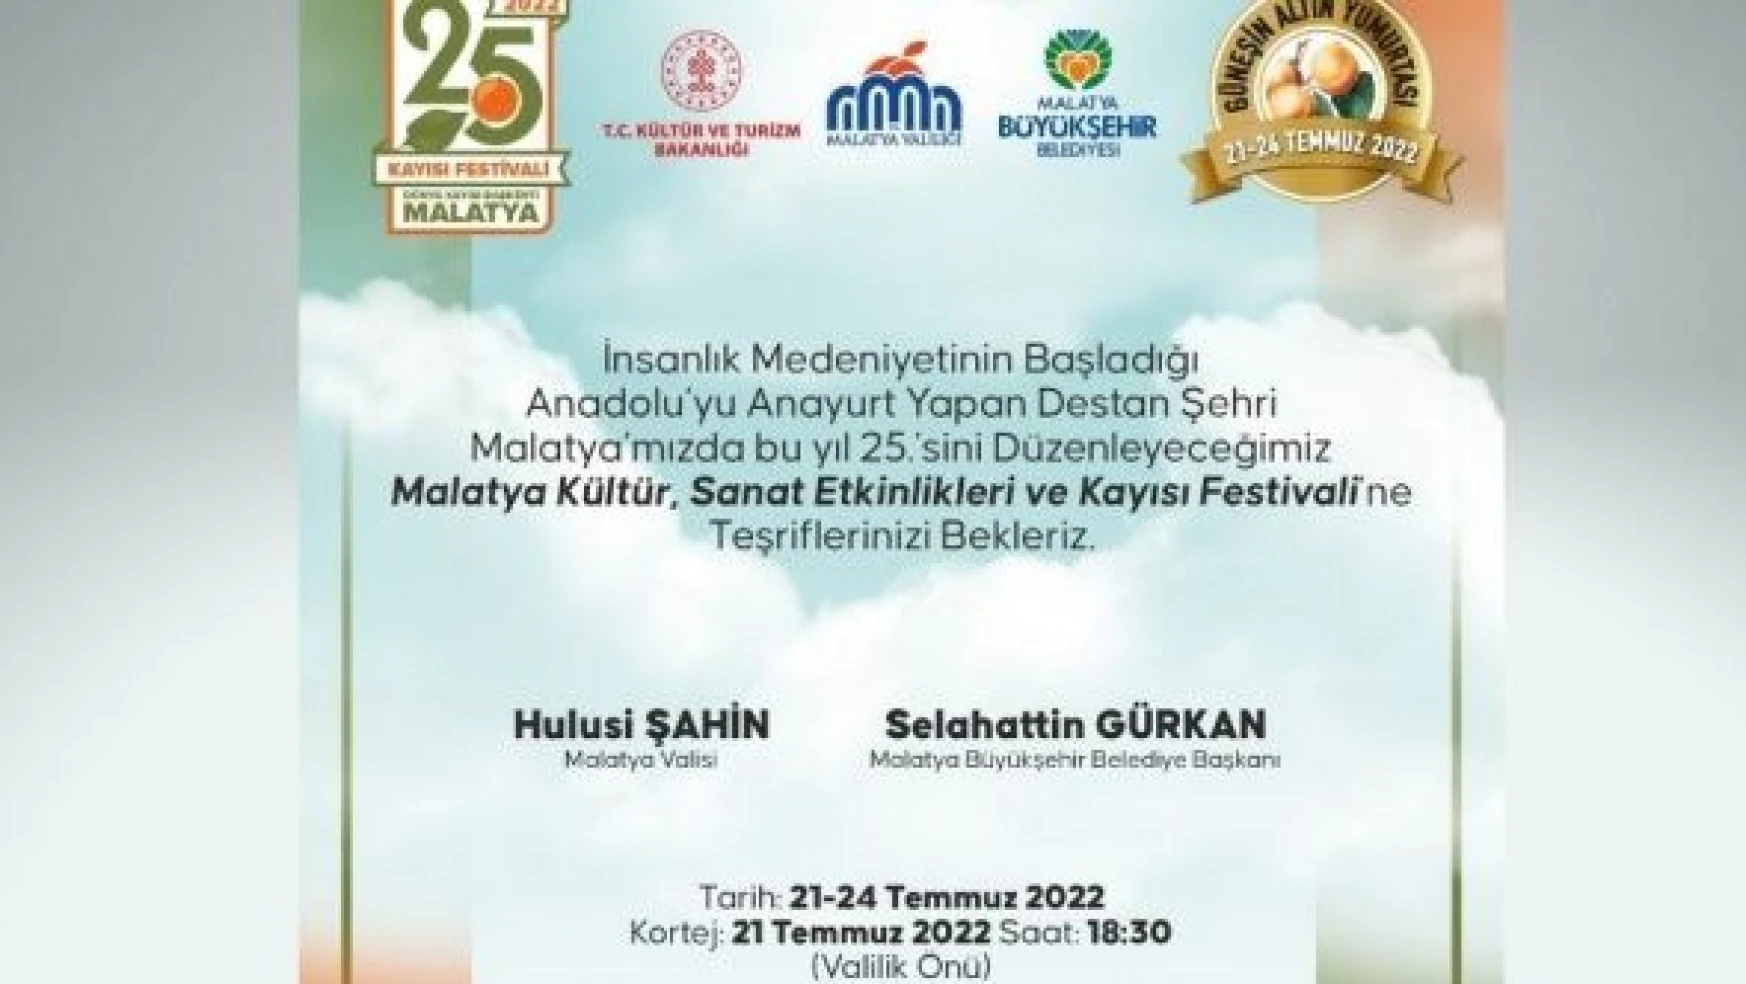 Malatya Uluslararası Kültür Sanat Etkinlikleri ve Kayısı Festivali'ne hazır!